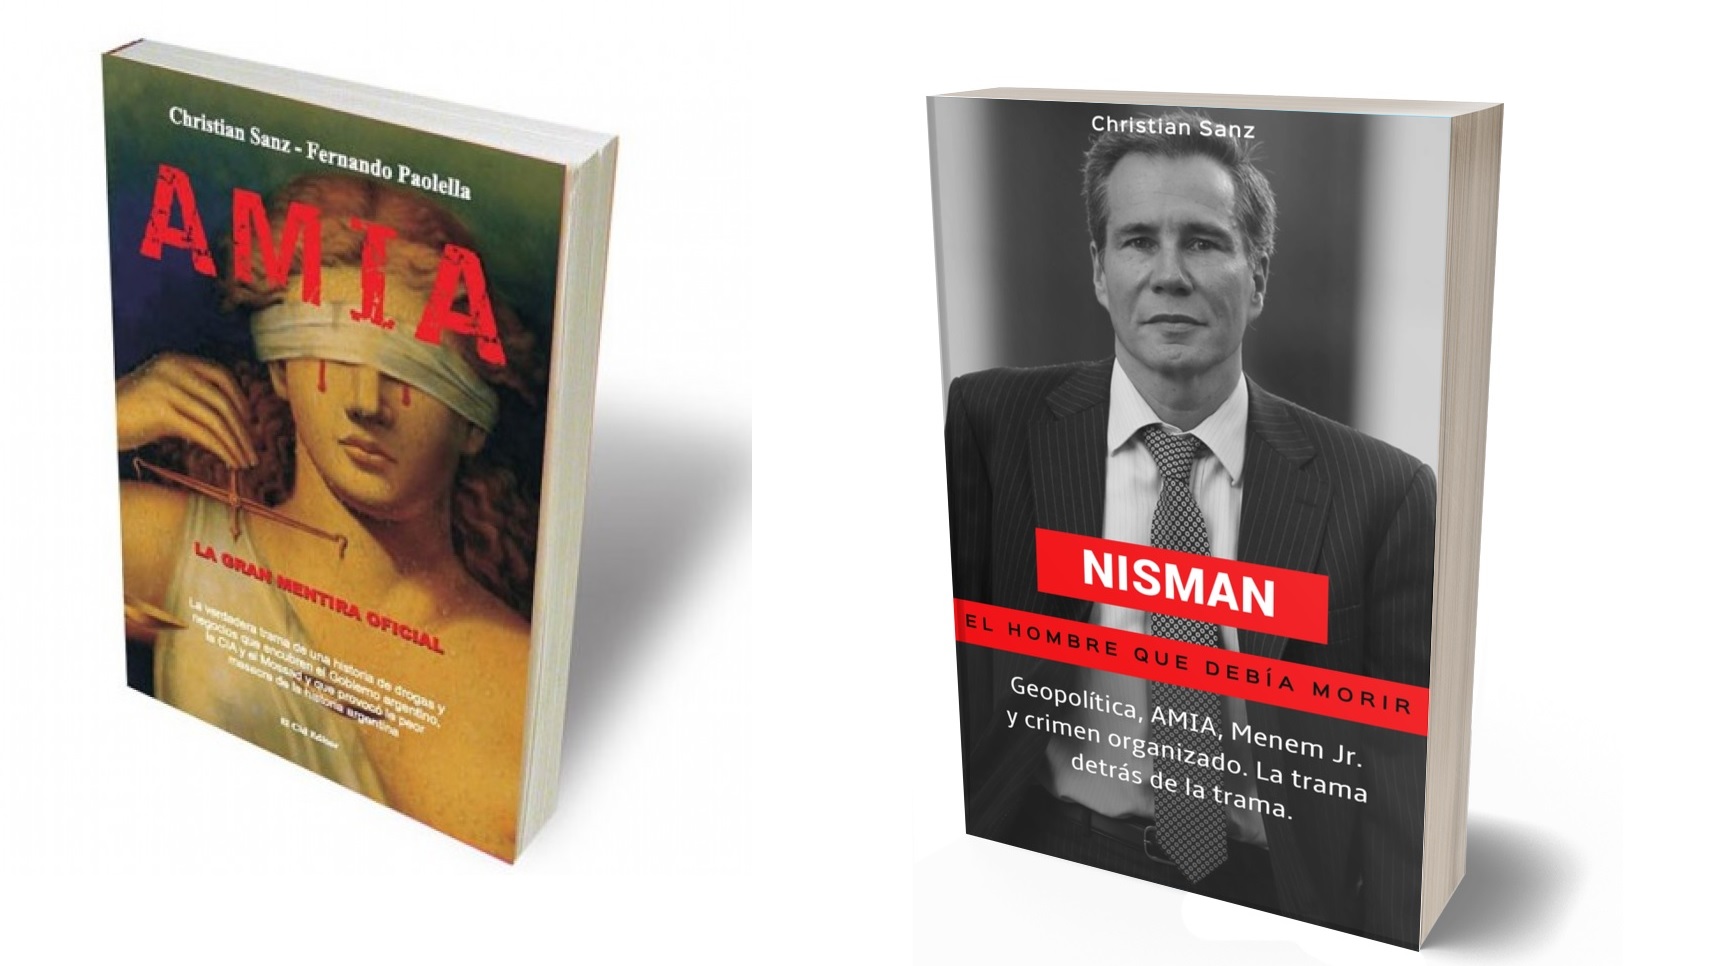 Memorándum con Irán, Nisman y AMIA: descargate gratis los dos libros que revelan toda la verdad - TotalNews Agency Argentina